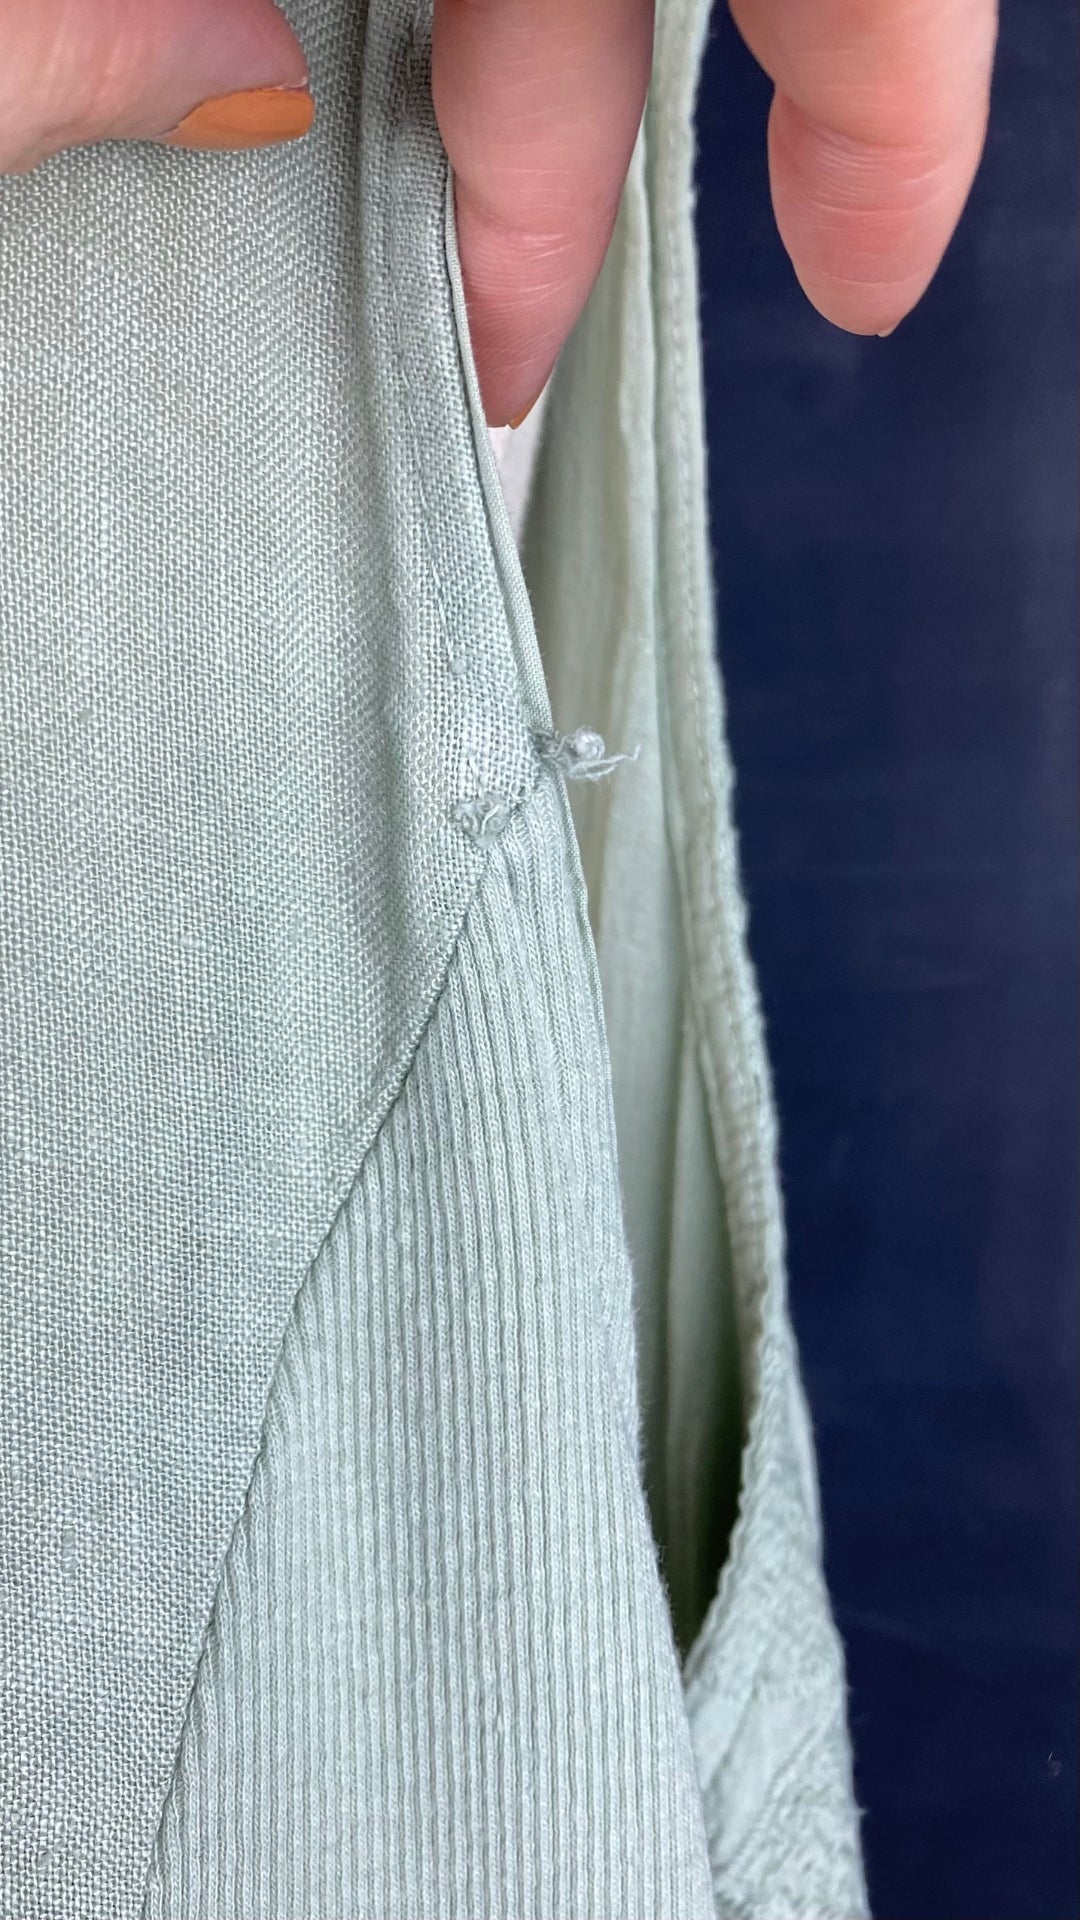 Robe sauge en lin brodé avec poches, taille 2X. Vue du petit fil tiré au dos.